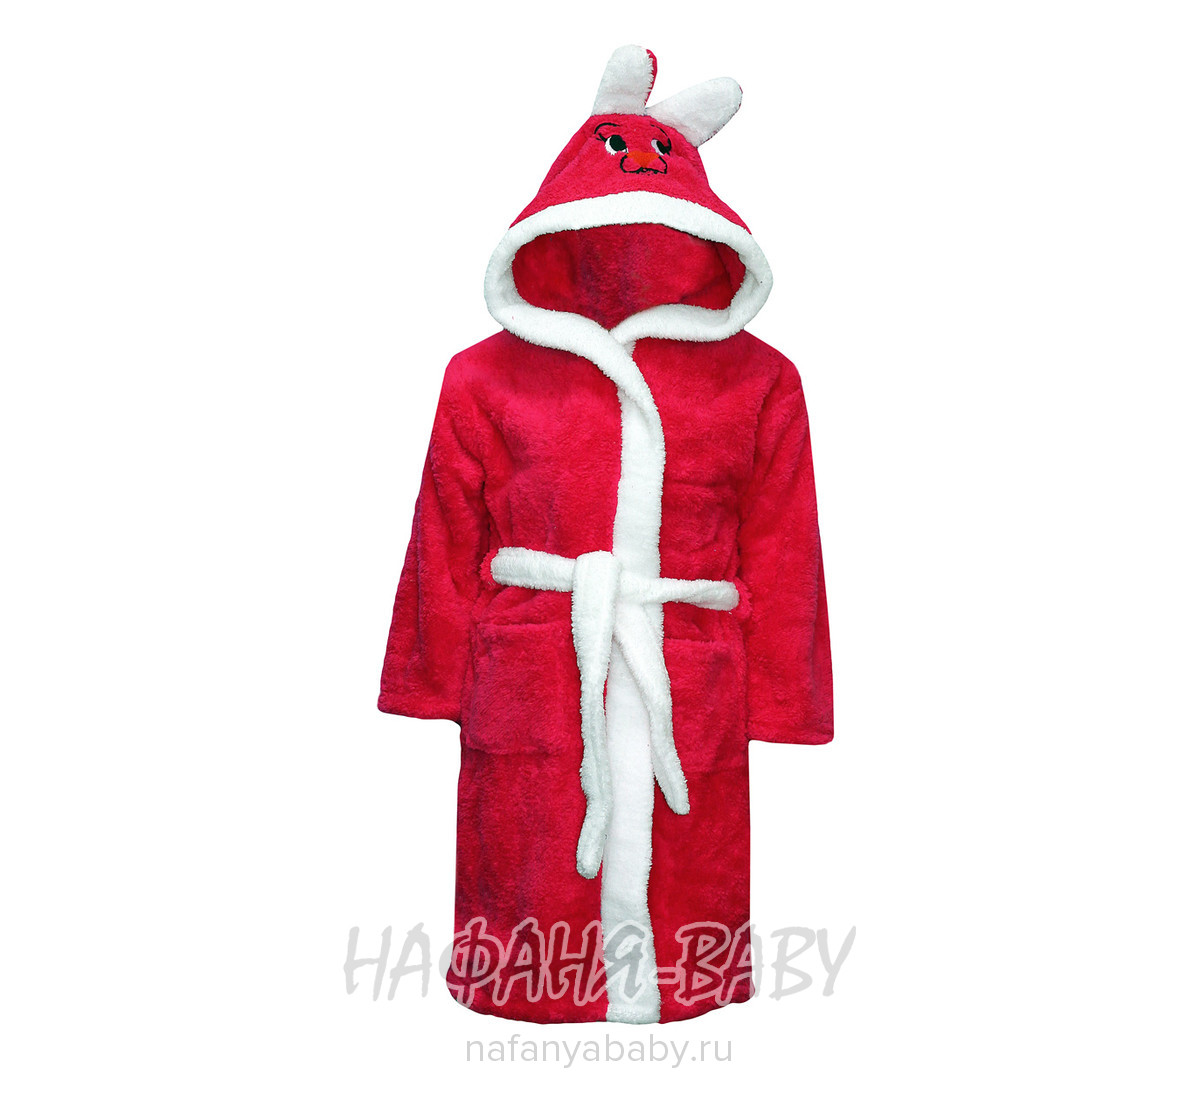 Детский теплый халат BAMBOO, купить в интернет магазине Нафаня. арт: 2931.